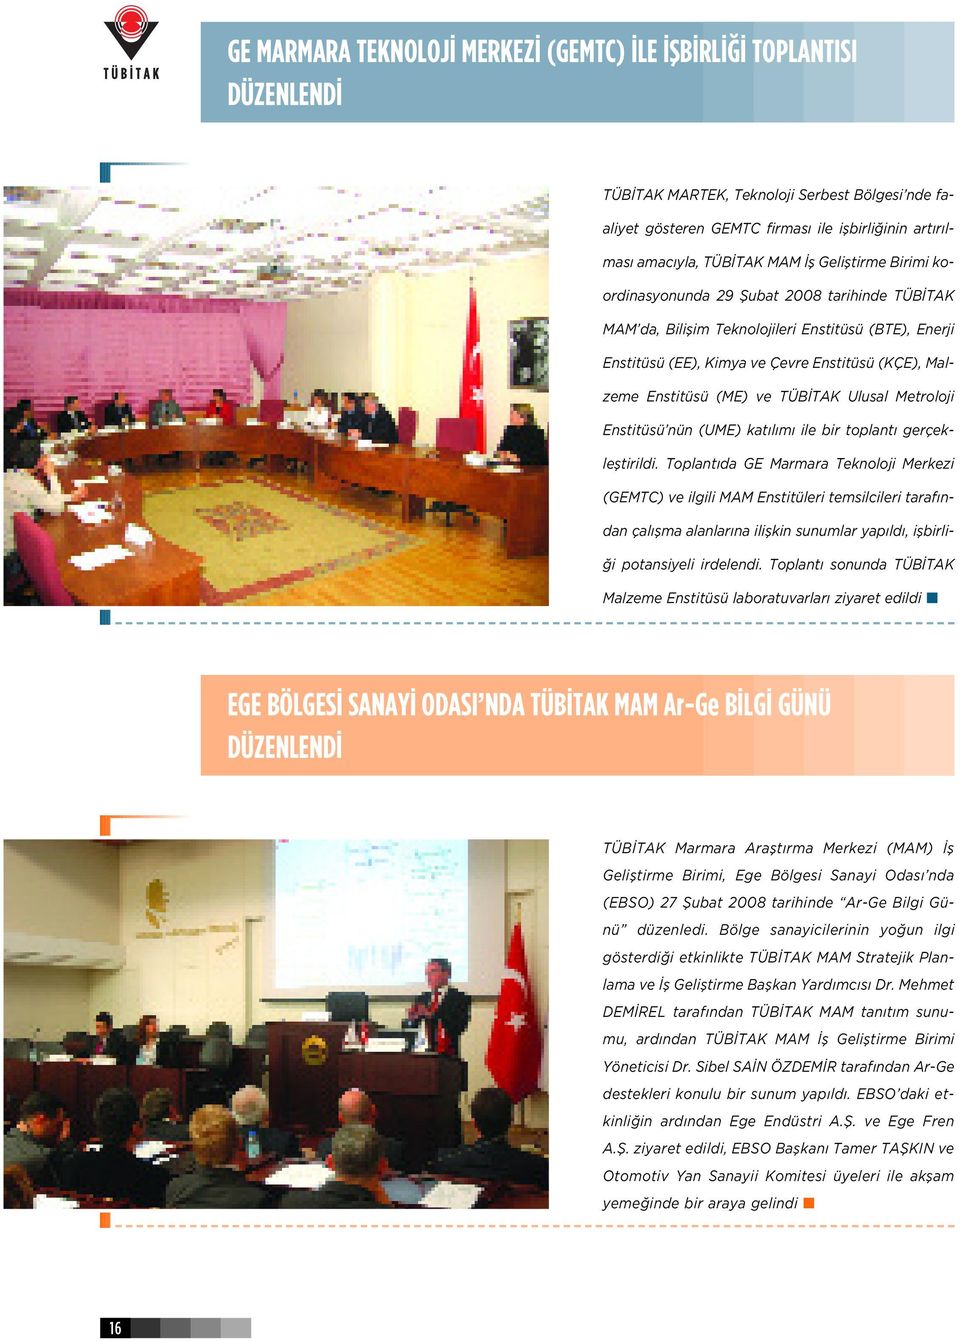 TÜB TAK Ulusal Metroloji Enstitüsü nün (UME) kat l m ile bir toplant gerçeklefltirildi.